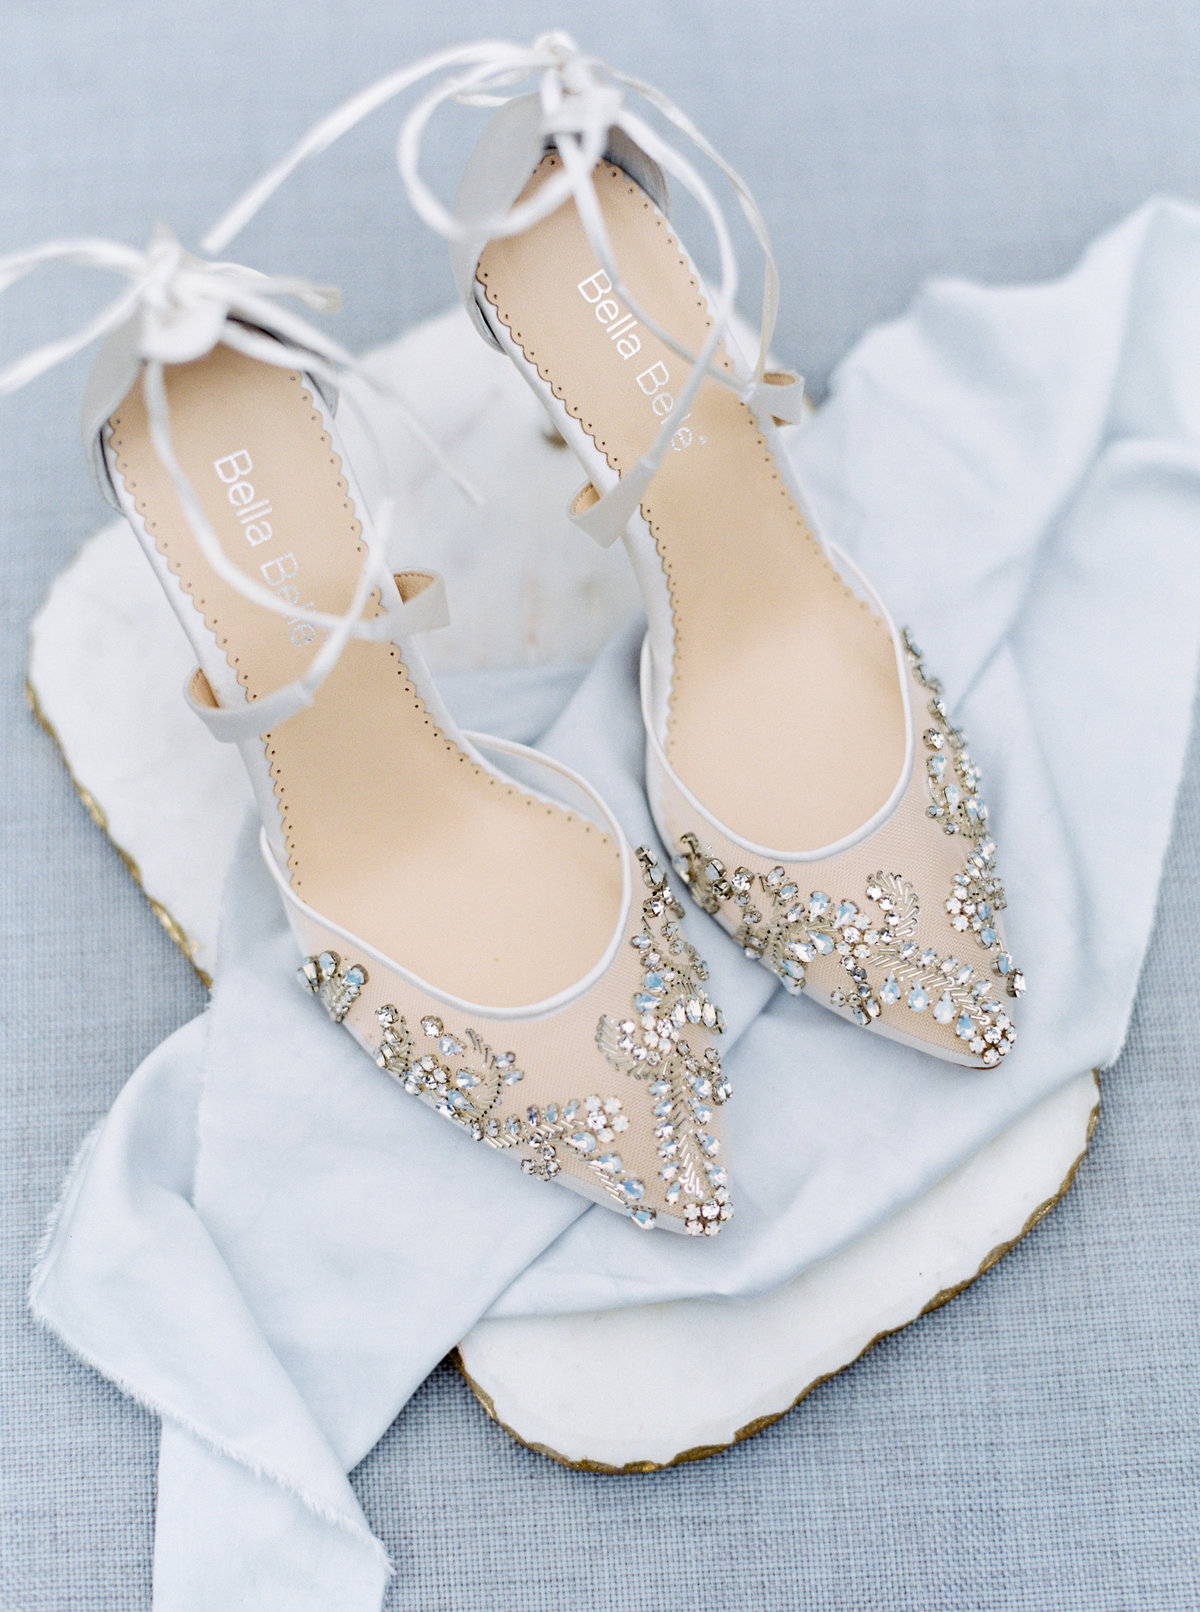 Florence Bella Belle Wedding Shoes